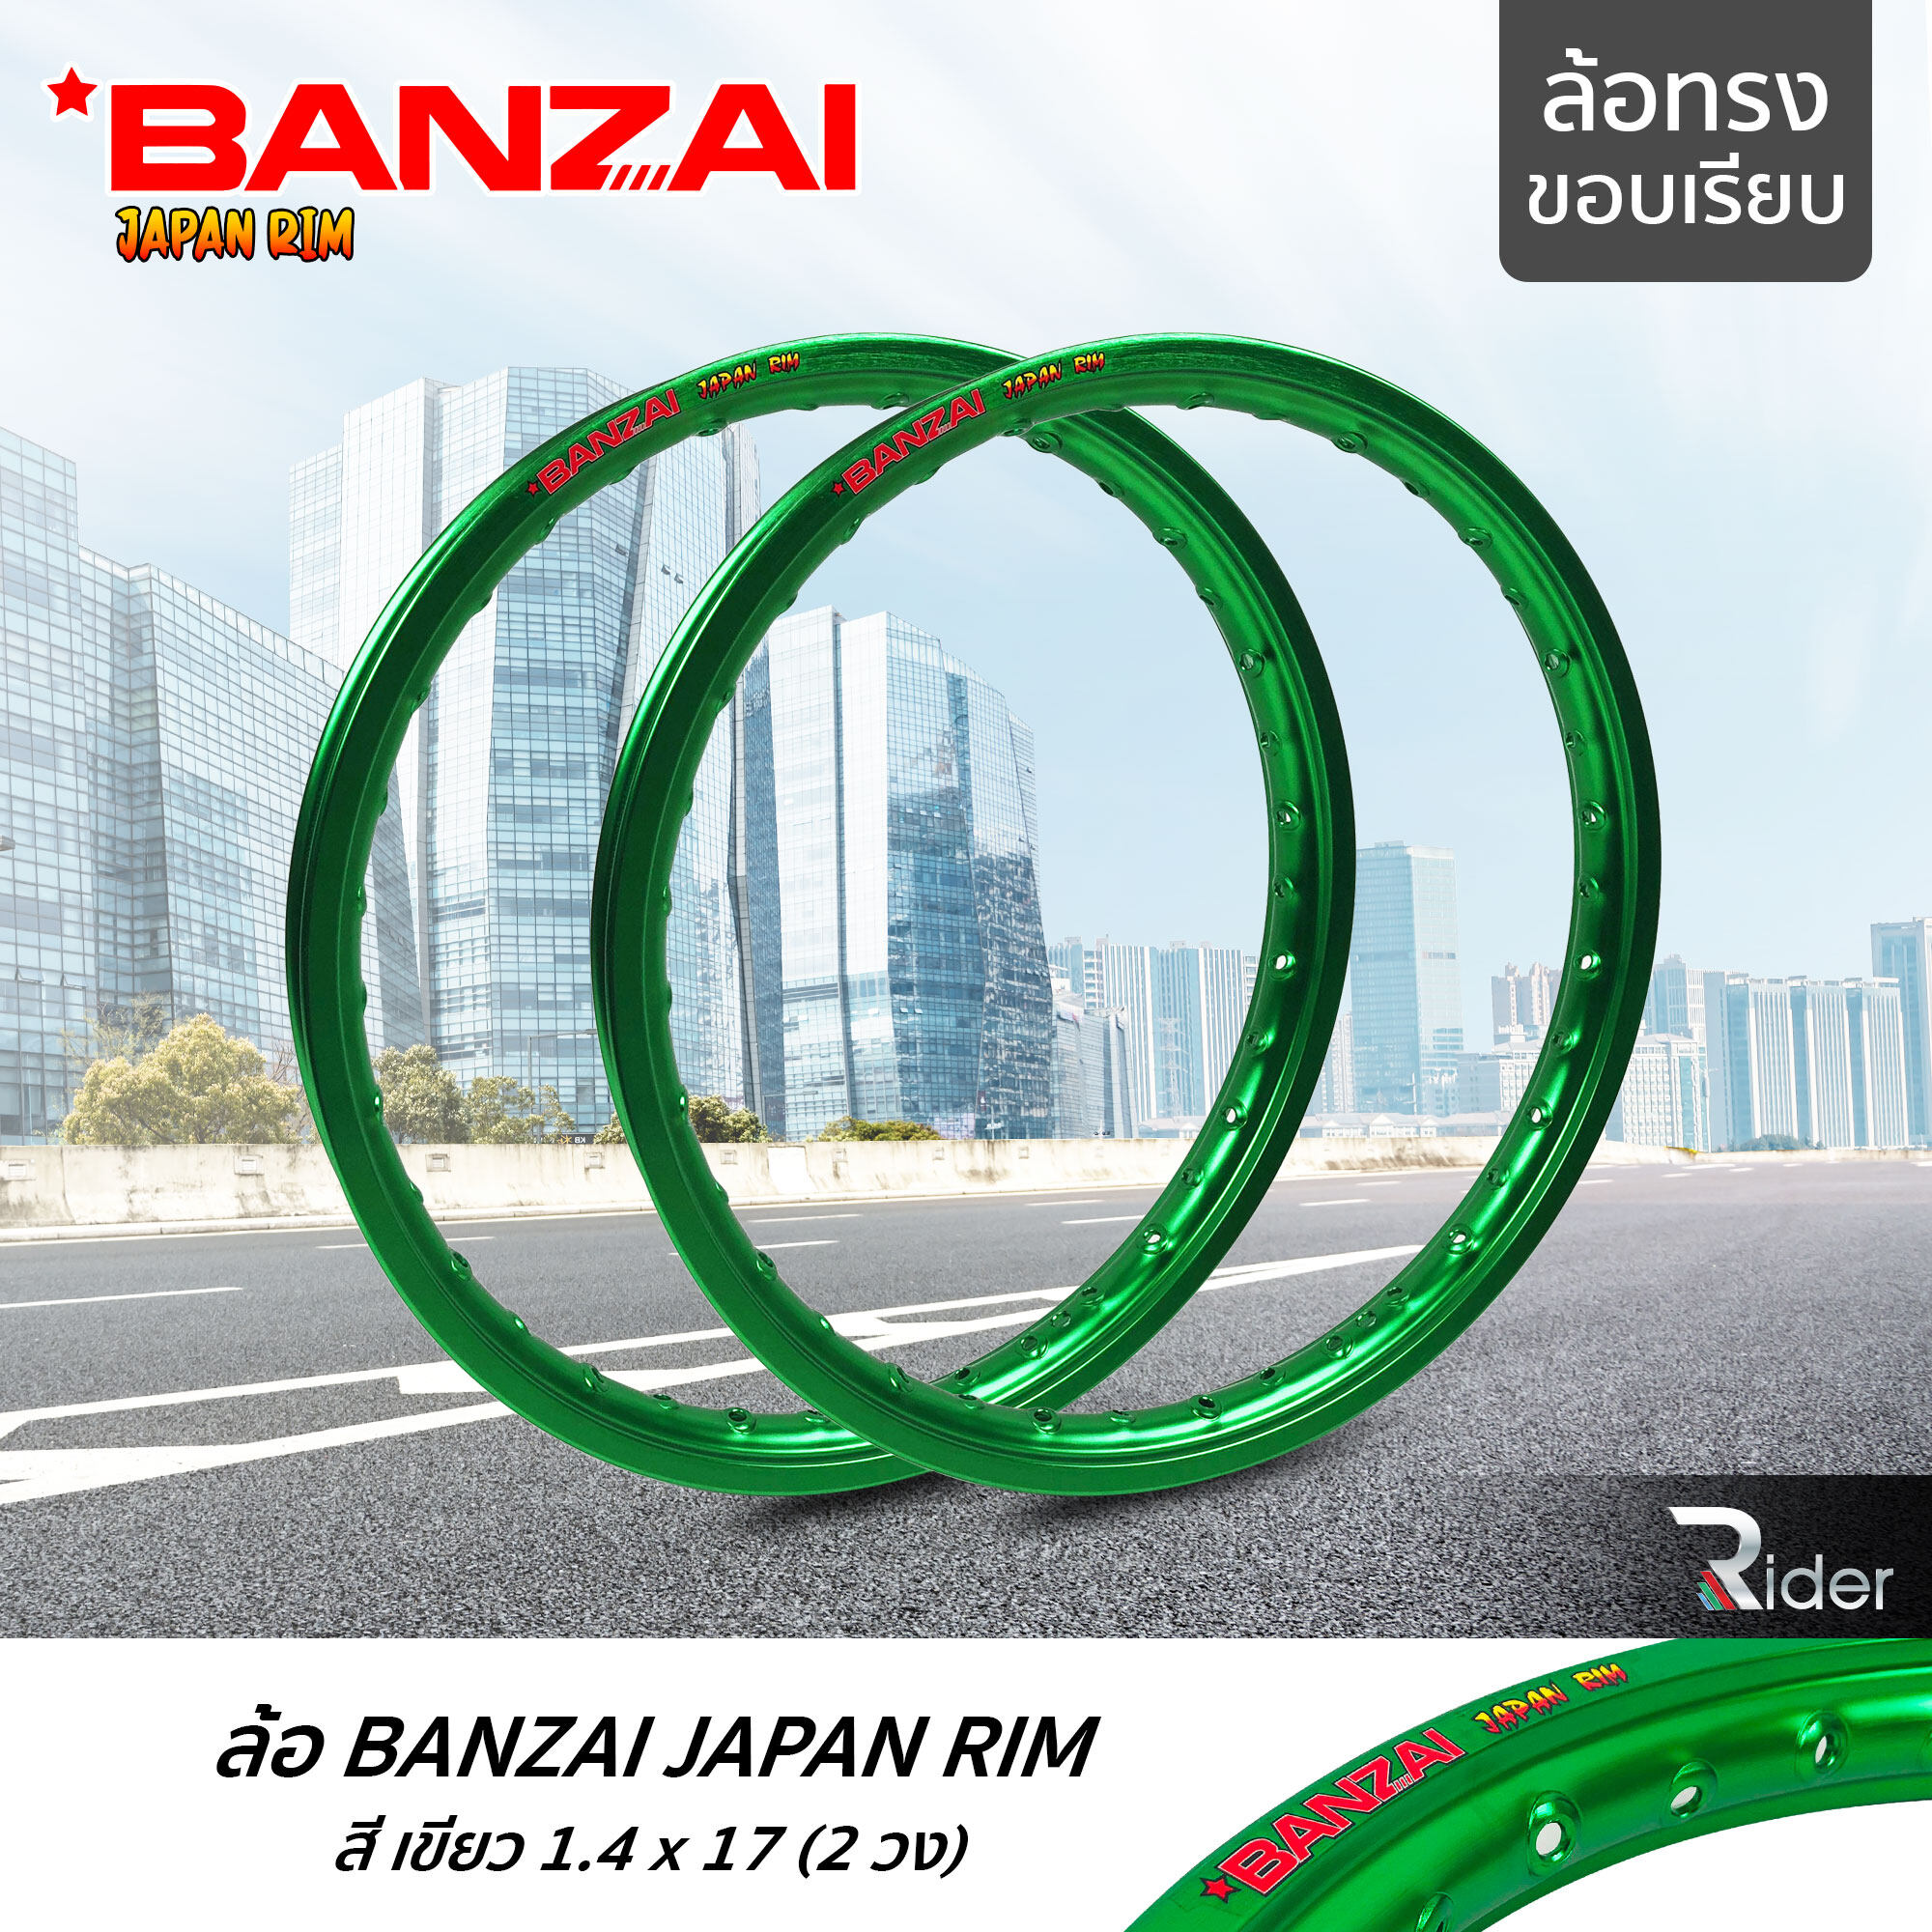 BANZAI ล้อขอบ 17 บันไซ รุ่น JAPAN RIM 1.4 ขอบ17 นิ้ว ล้อทรงขอบเรียบ แพ็คคู่ 2 วง วัสดุอลูมิเนียม ของแท้ รถจักรยานยนต์ สี เขียว